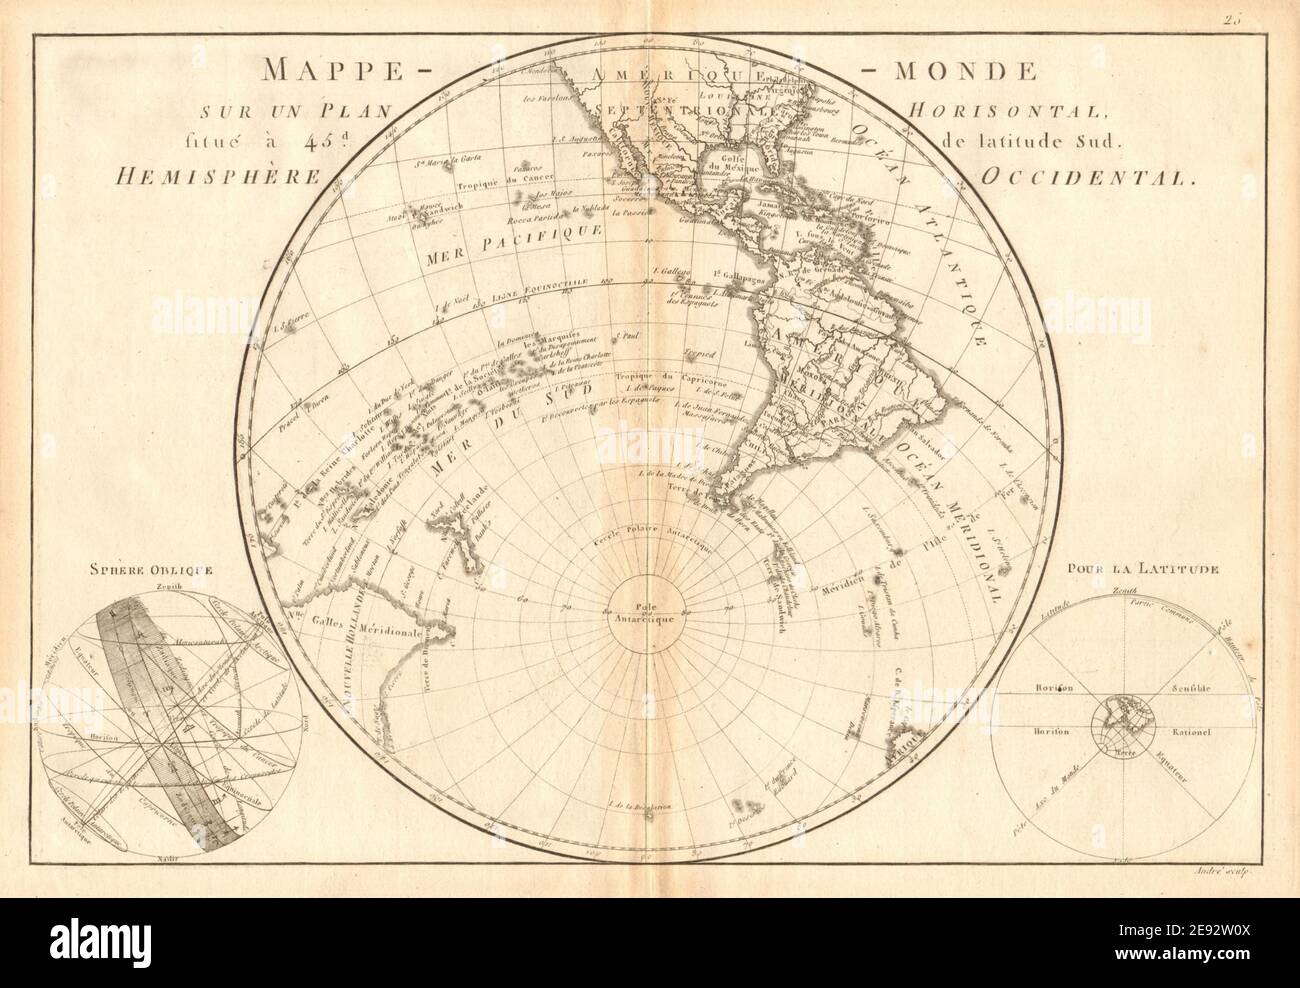 Mappe-monde sur un plan horisontal… à 45°S hemisphere Occidental. BONNE 1787 Stock Photo